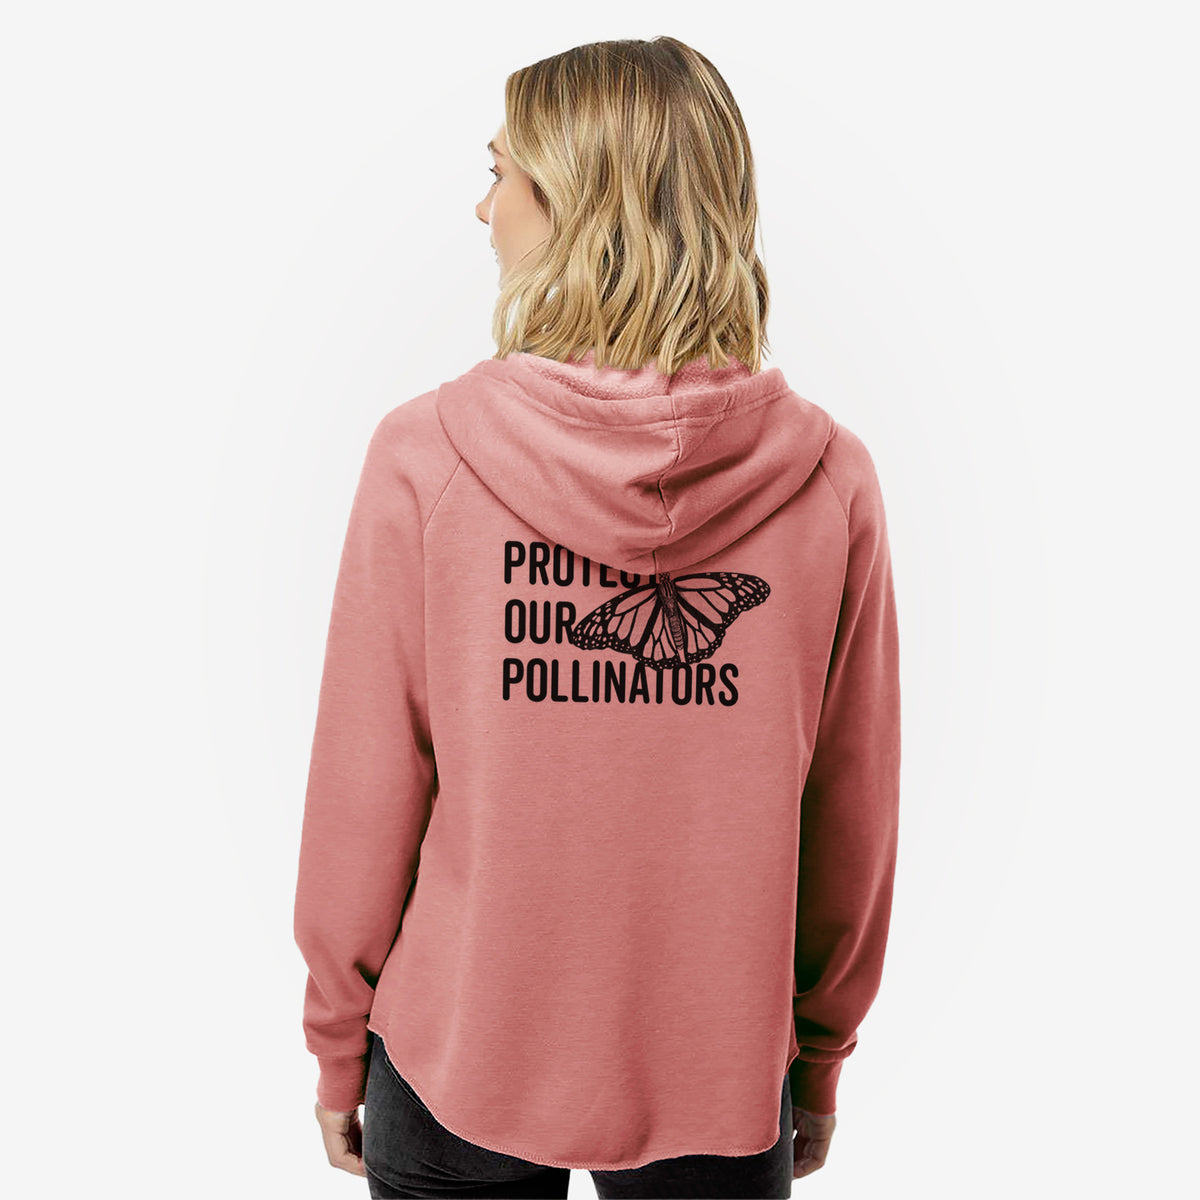 Protect our Pollinators - Women&#39;s Cali Wave Zip-Up Sweatshirt